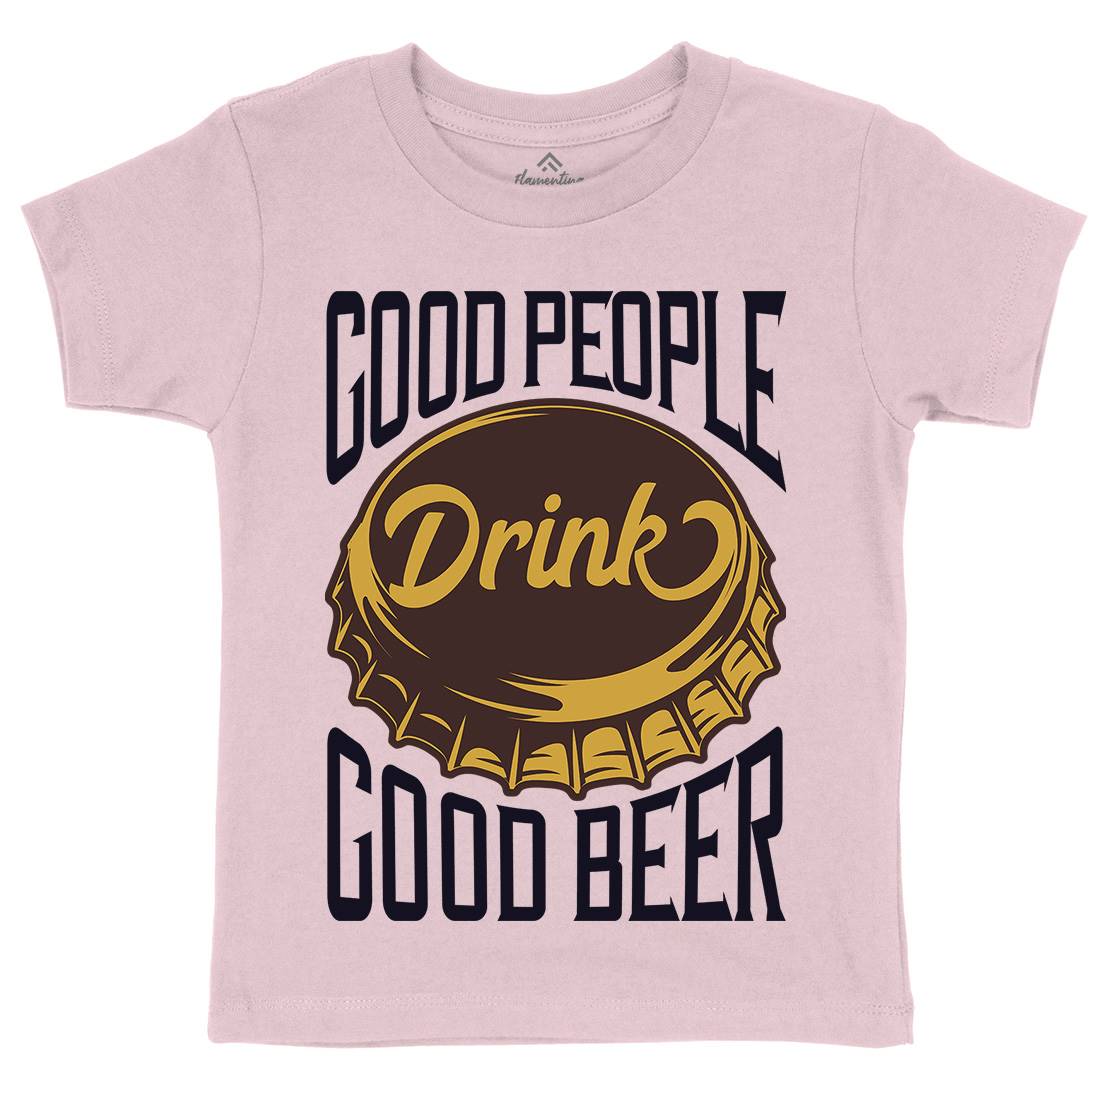 Good People Drink Beer Kids Crew Neck T-Shirt Drinks B287